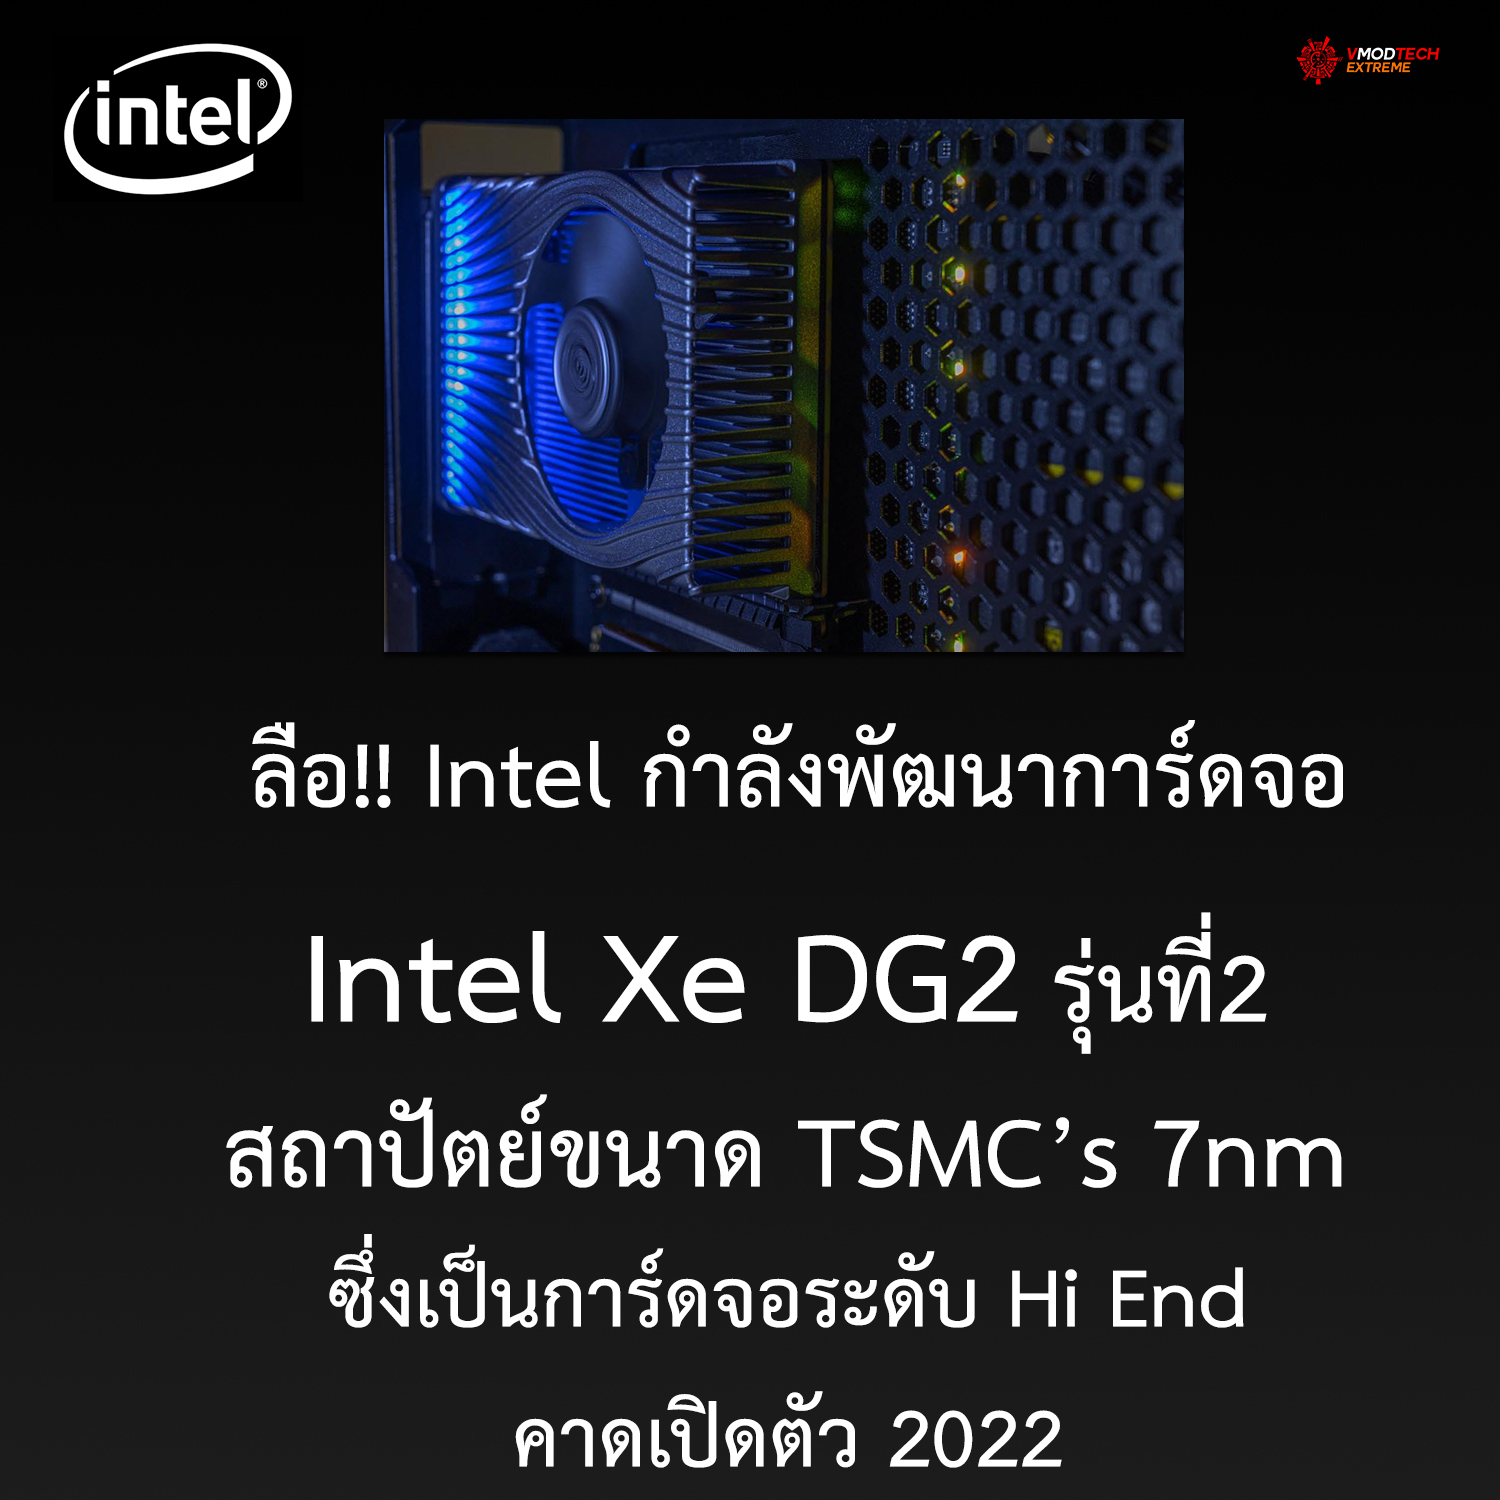 ลือ!! Intel กำลังพัฒนาการ์ดจอ Intel Xe DG2 รุ่นที่2 สถาปัตย์ 7nm ซึ่งเป็นการ์ดจอระดับ Hi End คาดเปิดตัว 2022 